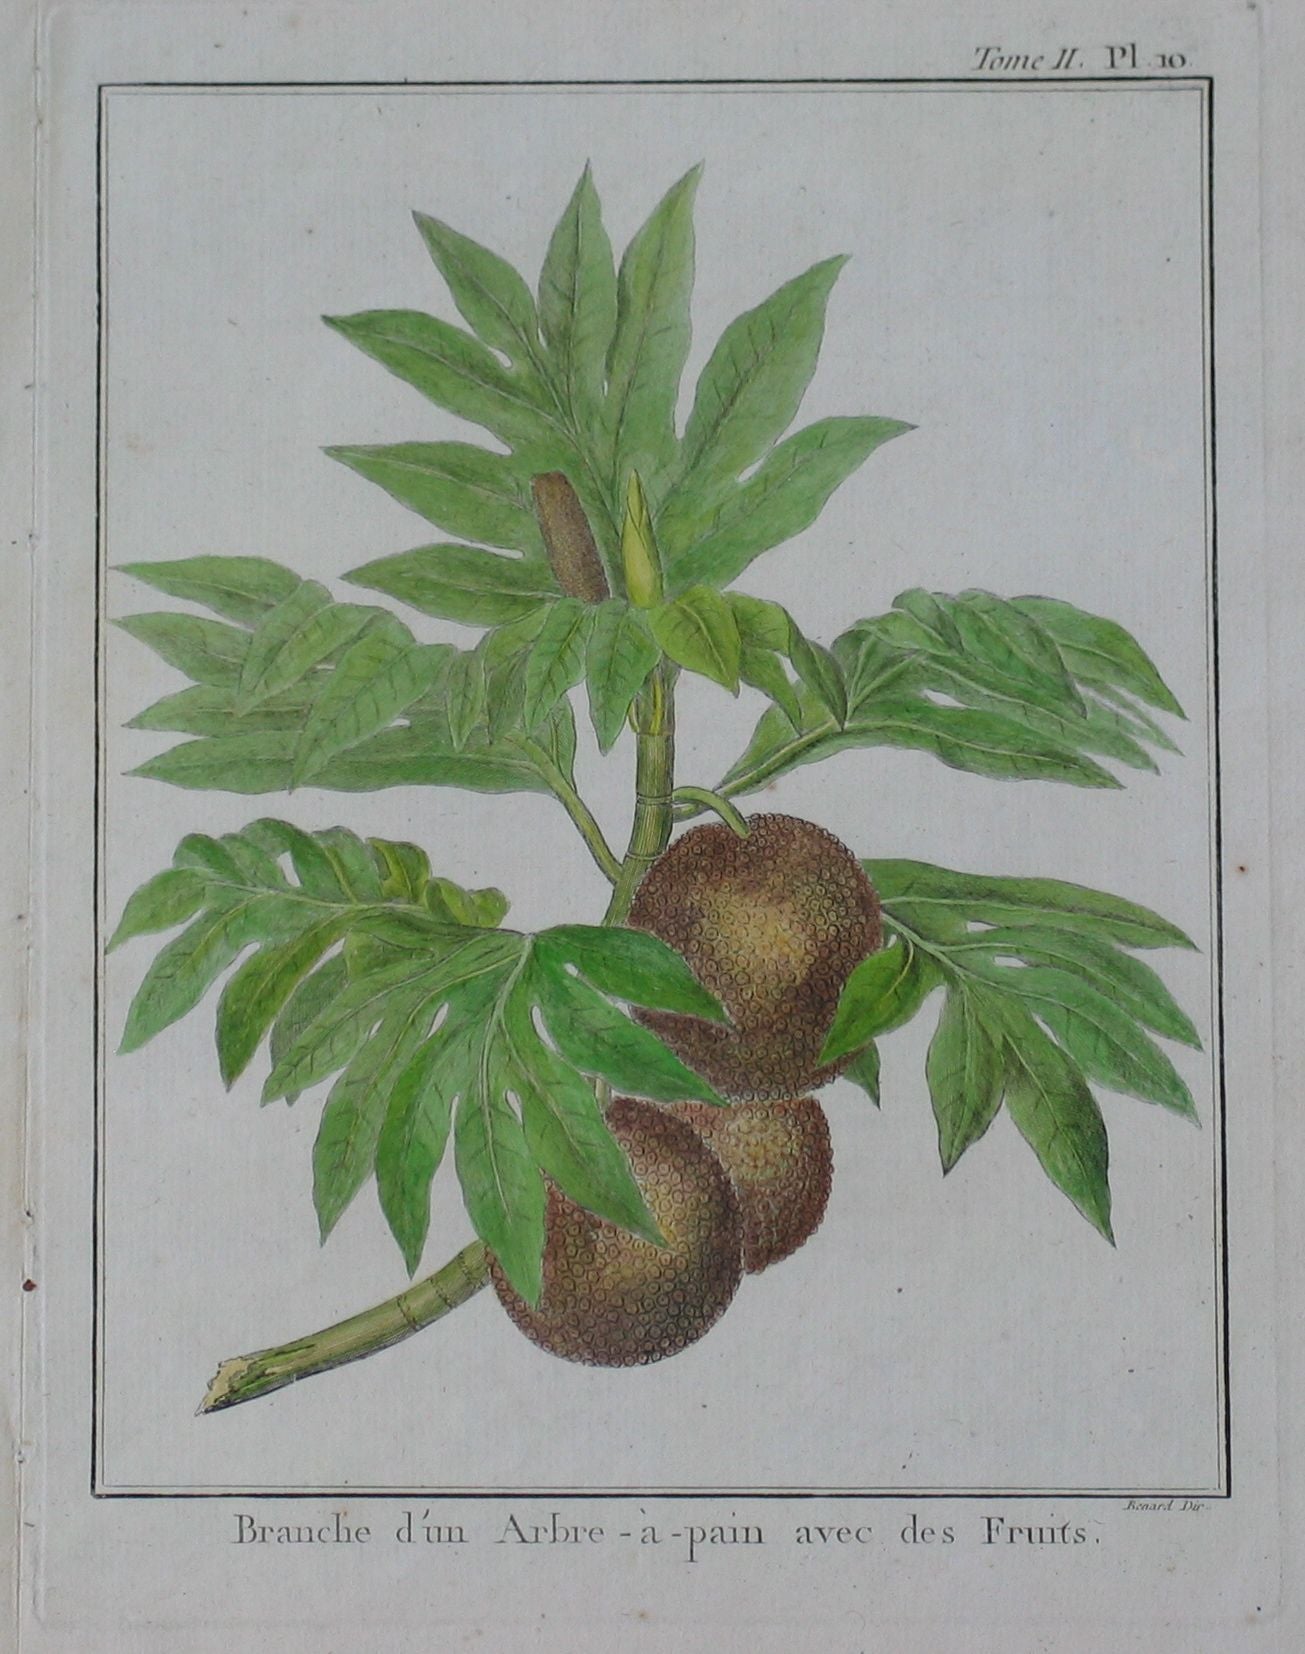 Branche d'un Arbre-à-pain avec des Fruit (Branch of a tree bread with fruit)